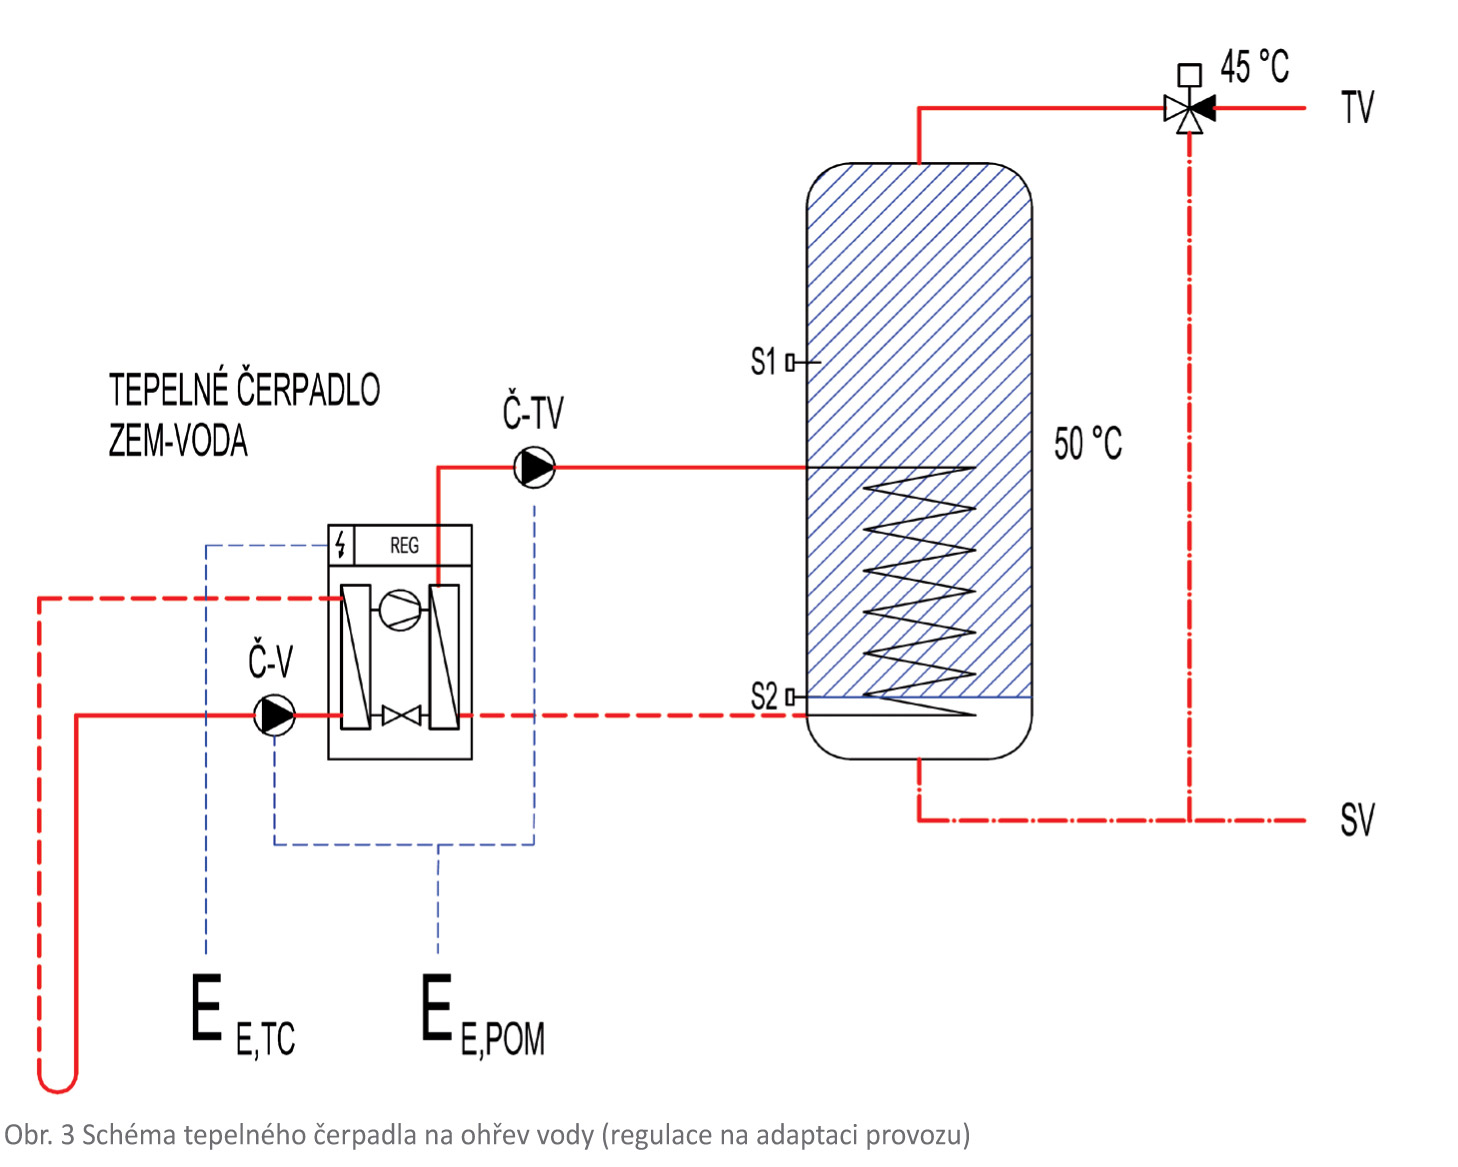 Obr. 3 Schéma tepelného čerpadla na ohřev vody (regulace na adaptaci provozu)